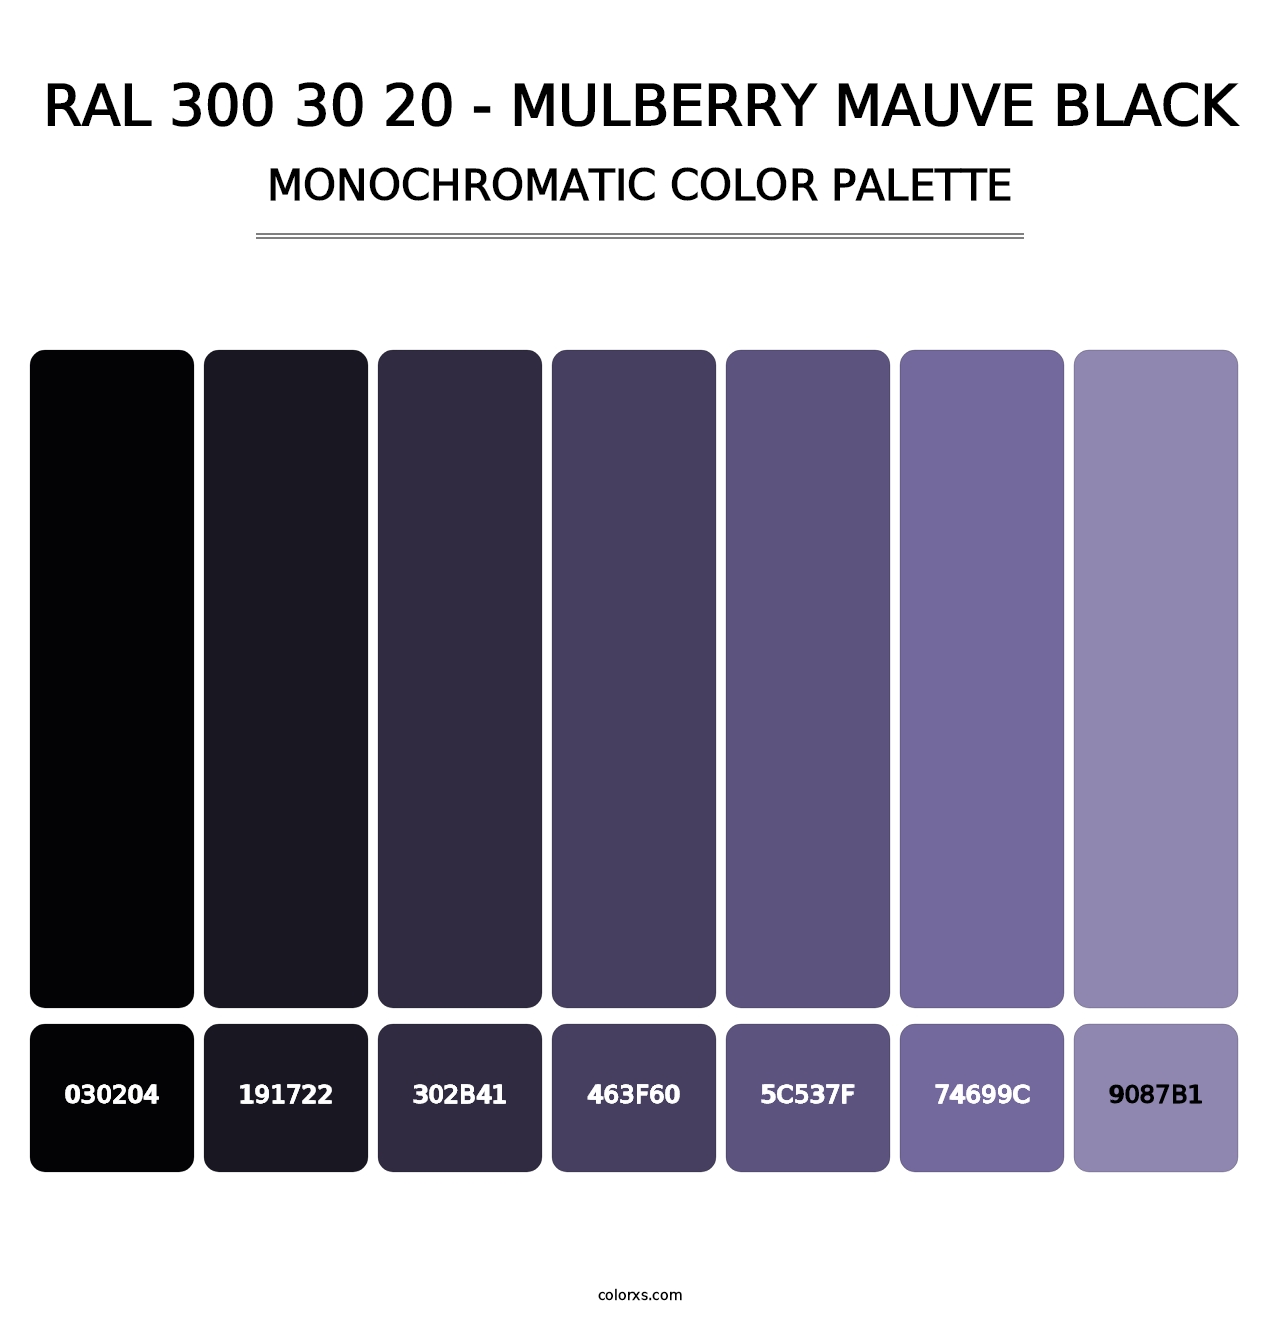 RAL 300 30 20 - Mulberry Mauve Black - Monochromatic Color Palette